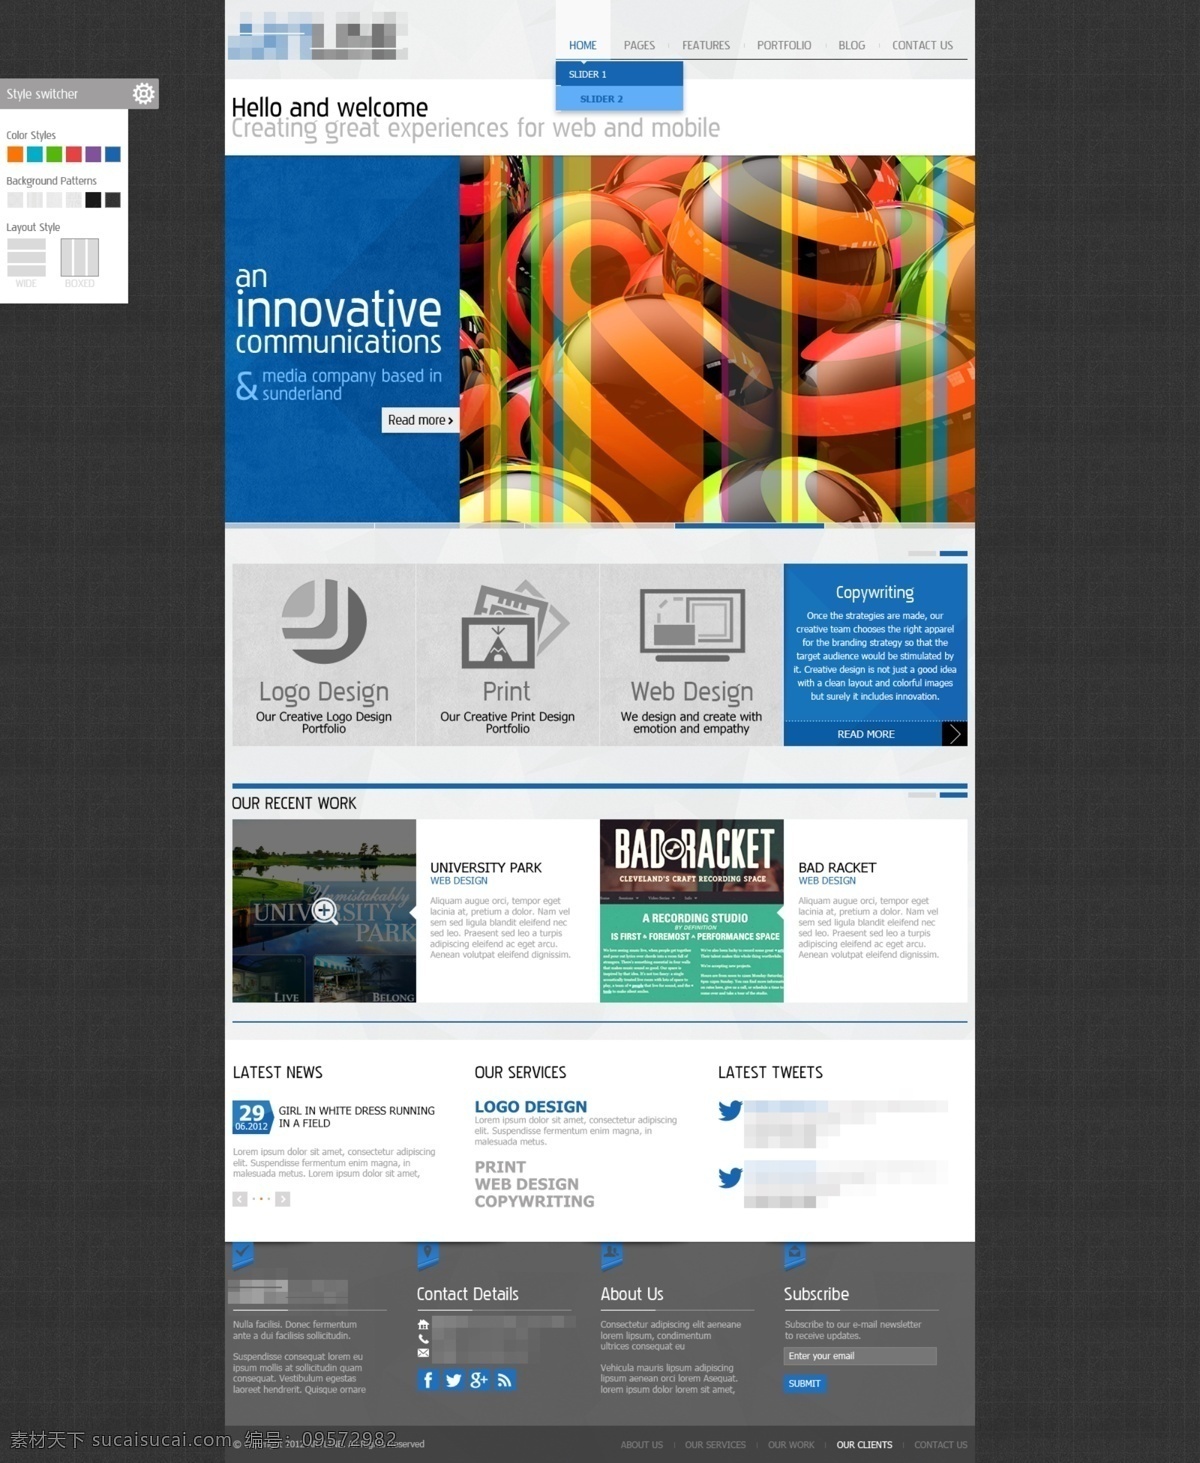 蓝色 精美 企业 科技 创意 印刷 网站首页 抽象 抽象创意 抽象设计 抽象网站 创意设计 创意网站 科技网站 科技网站首页 模板 印刷公司